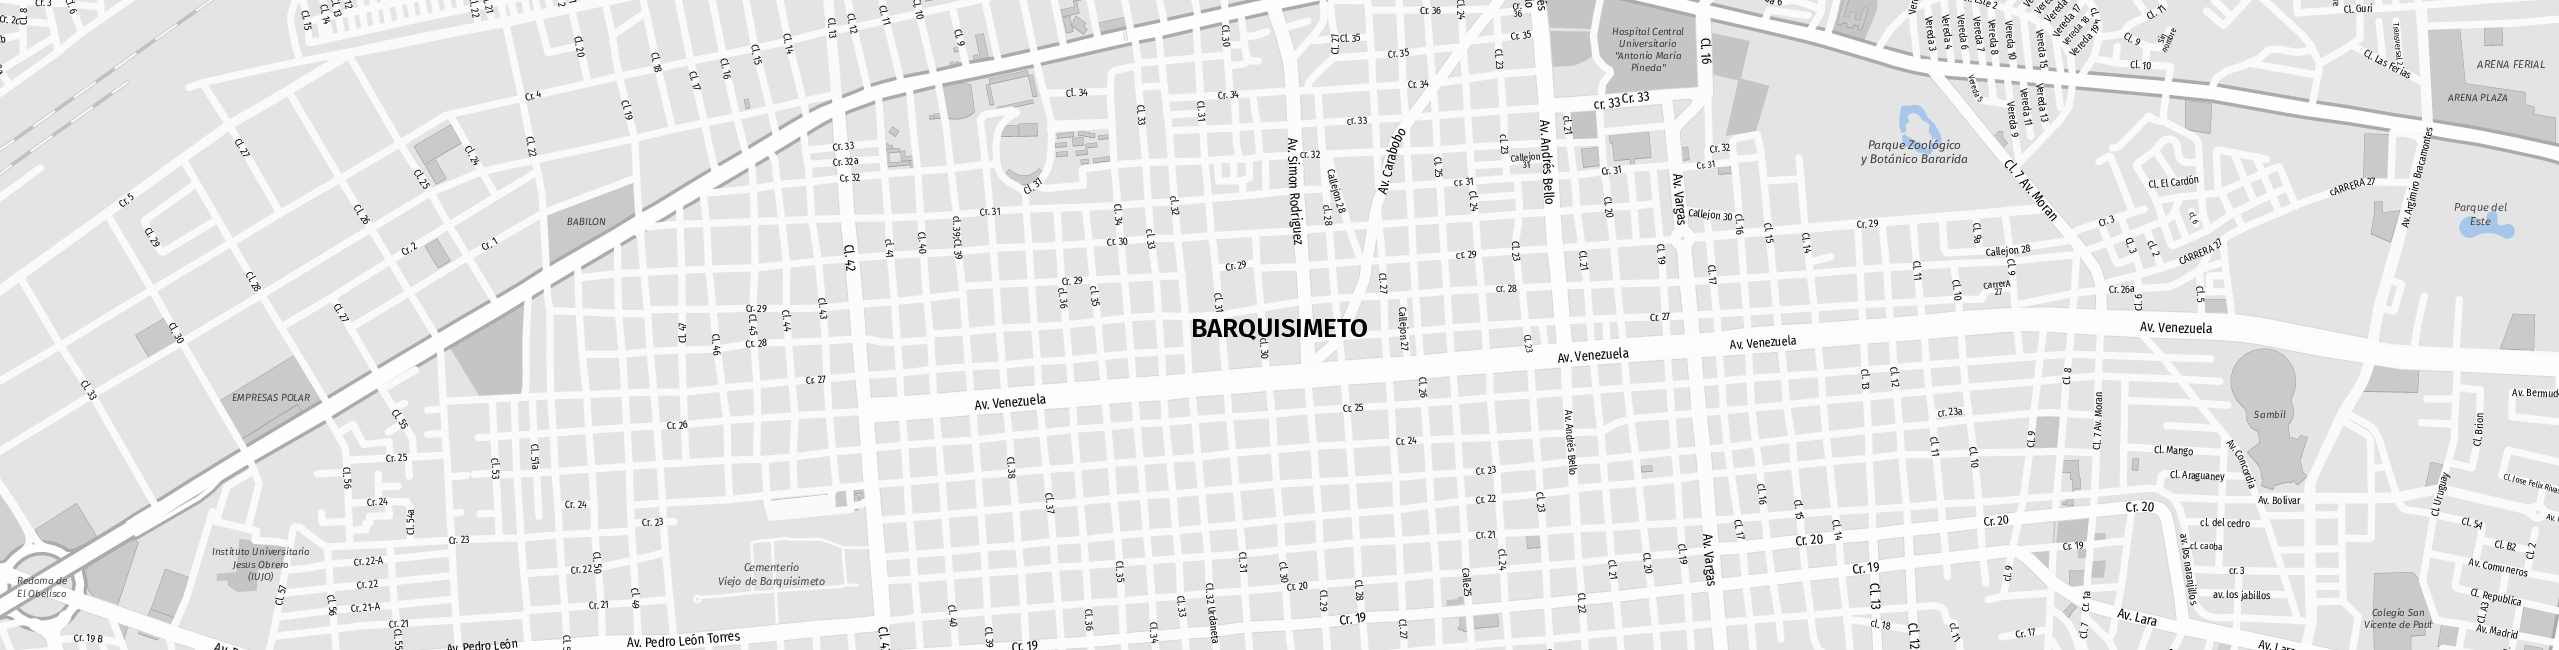 Stadtplan Barquisimeto zum Downloaden.